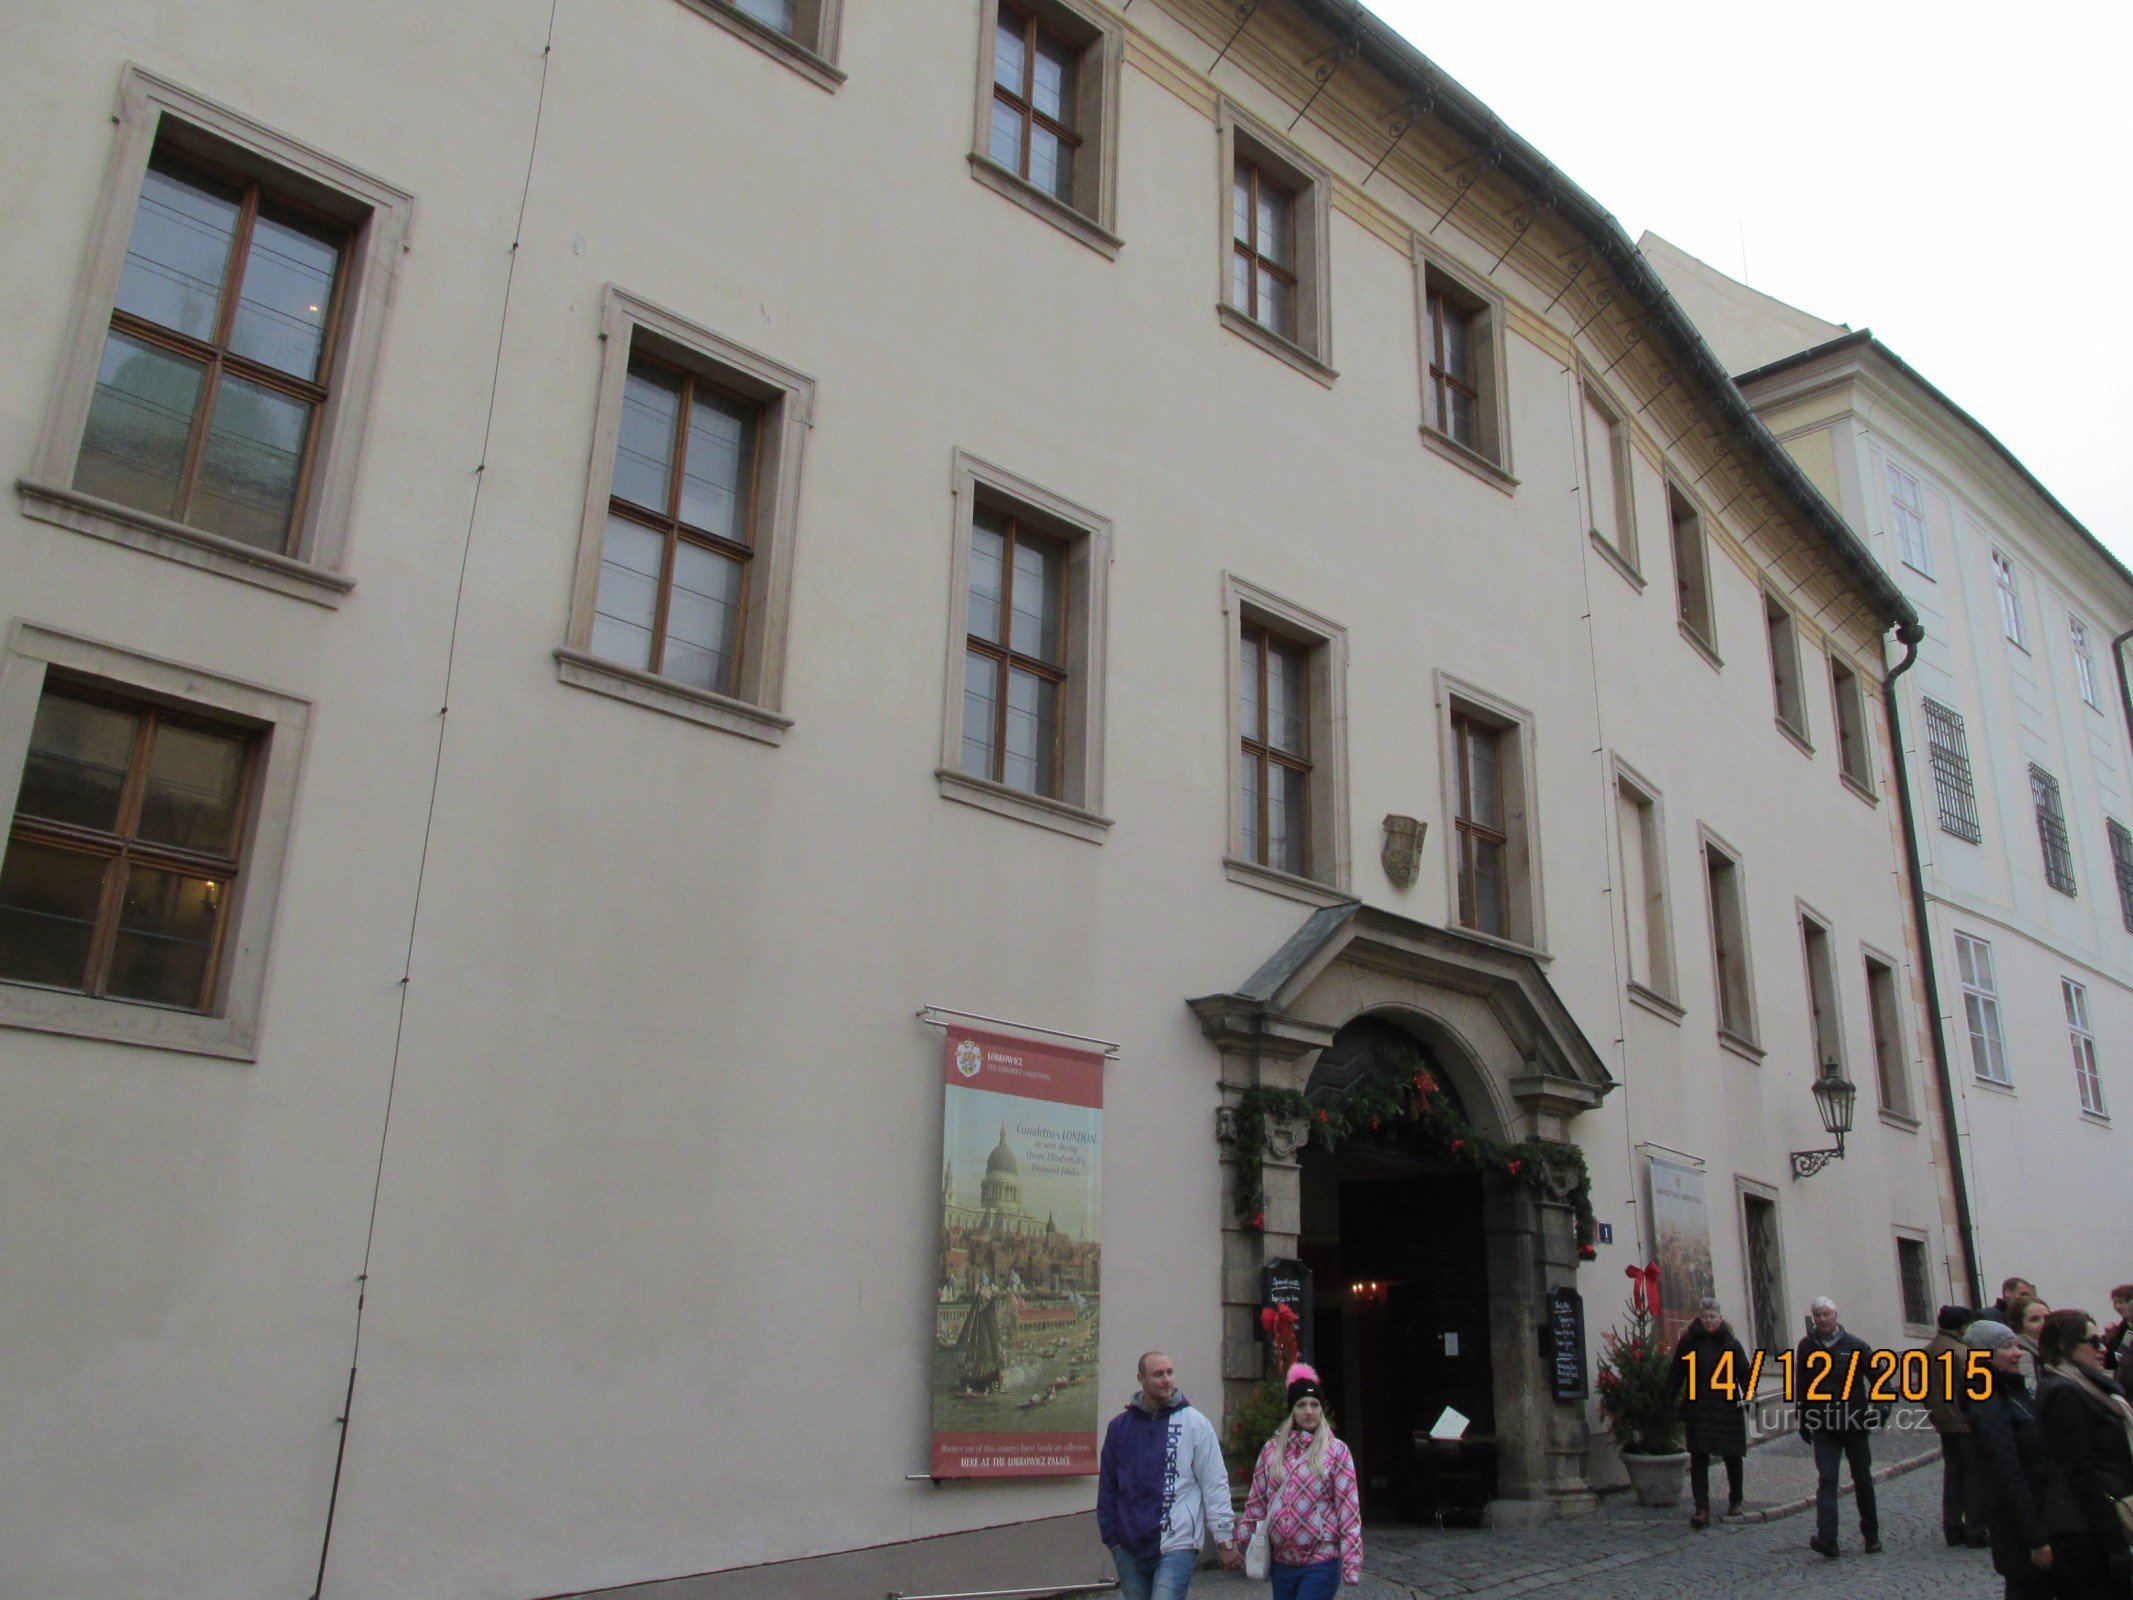 Μουσείο στο παλάτι Lobkowicz